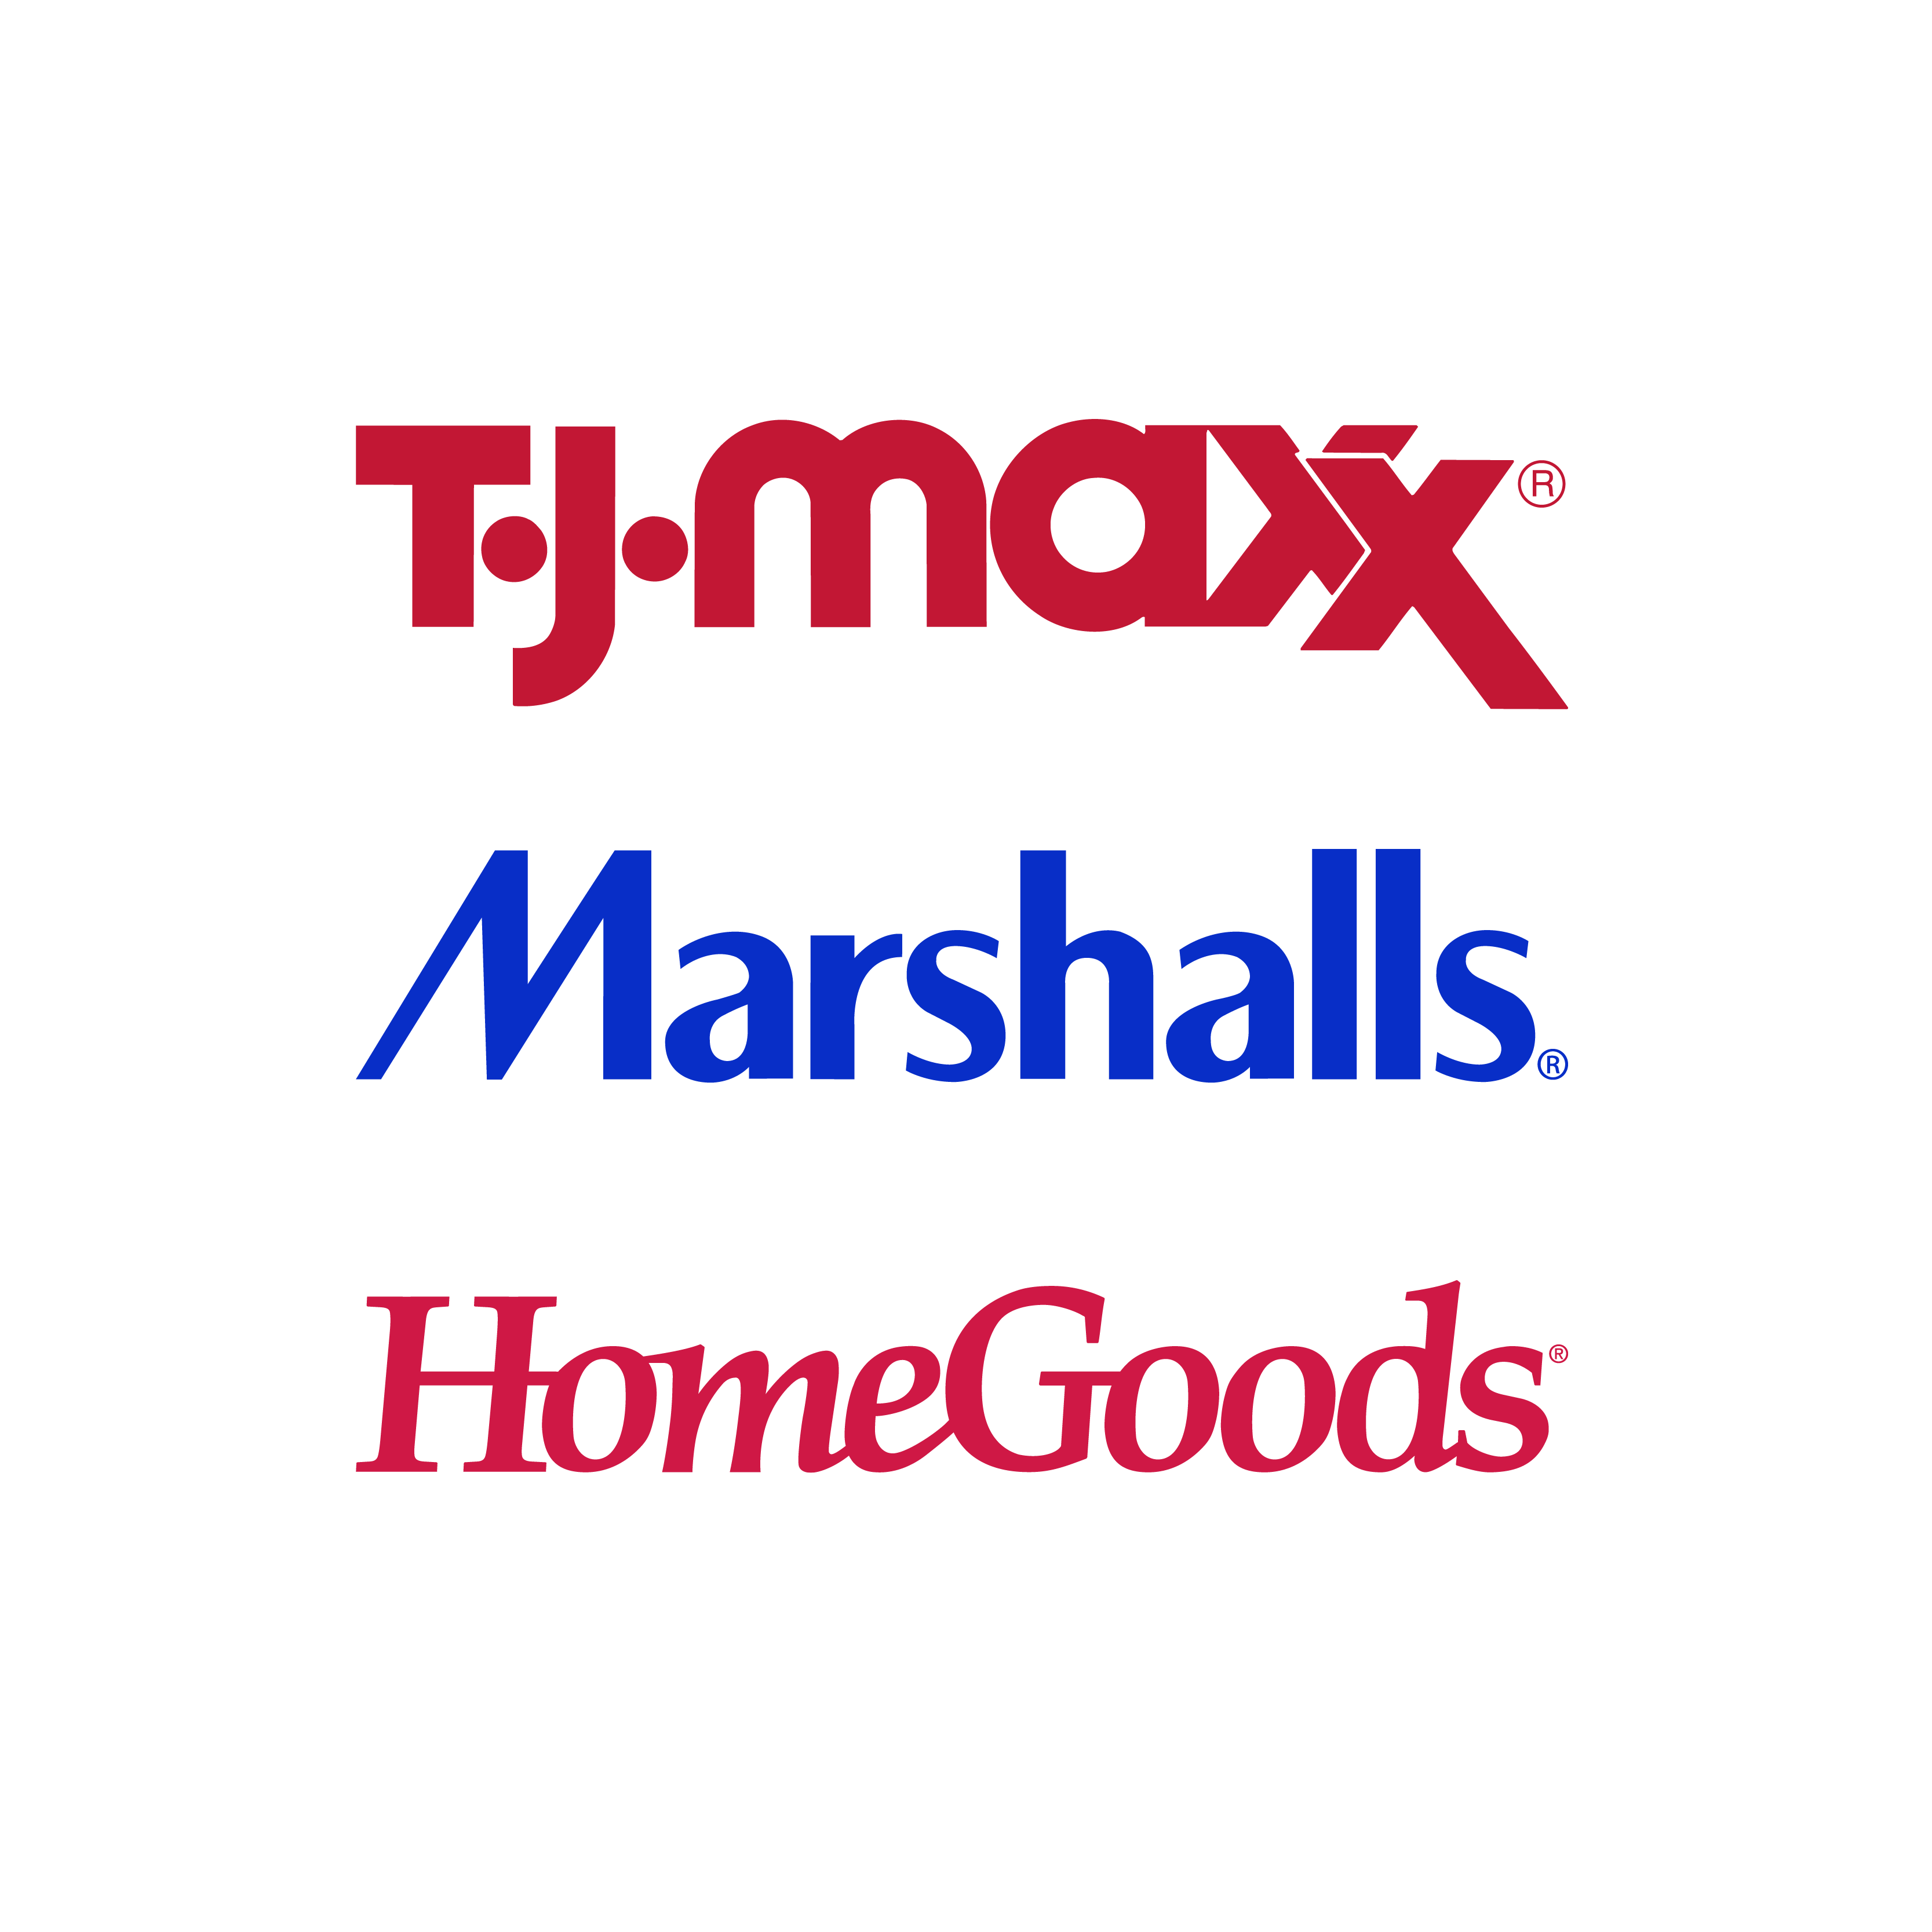 T.J. Maxx, Marshalls & HomeGoods logos